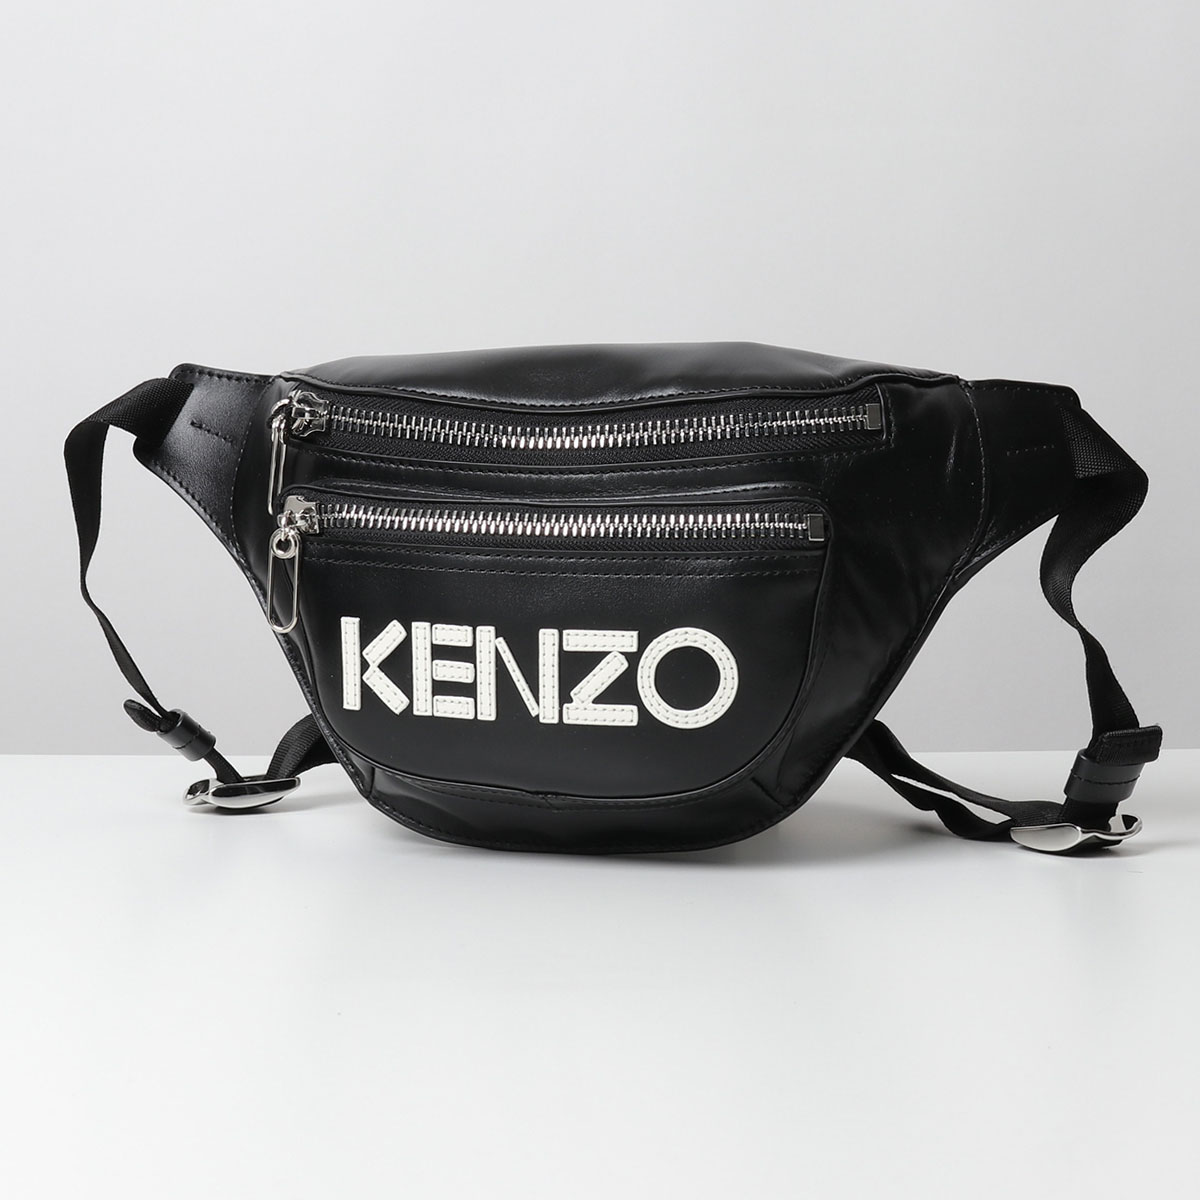 KENZO ケンゾー 5SA507 L47 99 BUMBAG レザー ロゴパッチ ボディバッグ ウエストポーチ ベルトバッグ 鞄 メンズ |  インポートセレクト musee